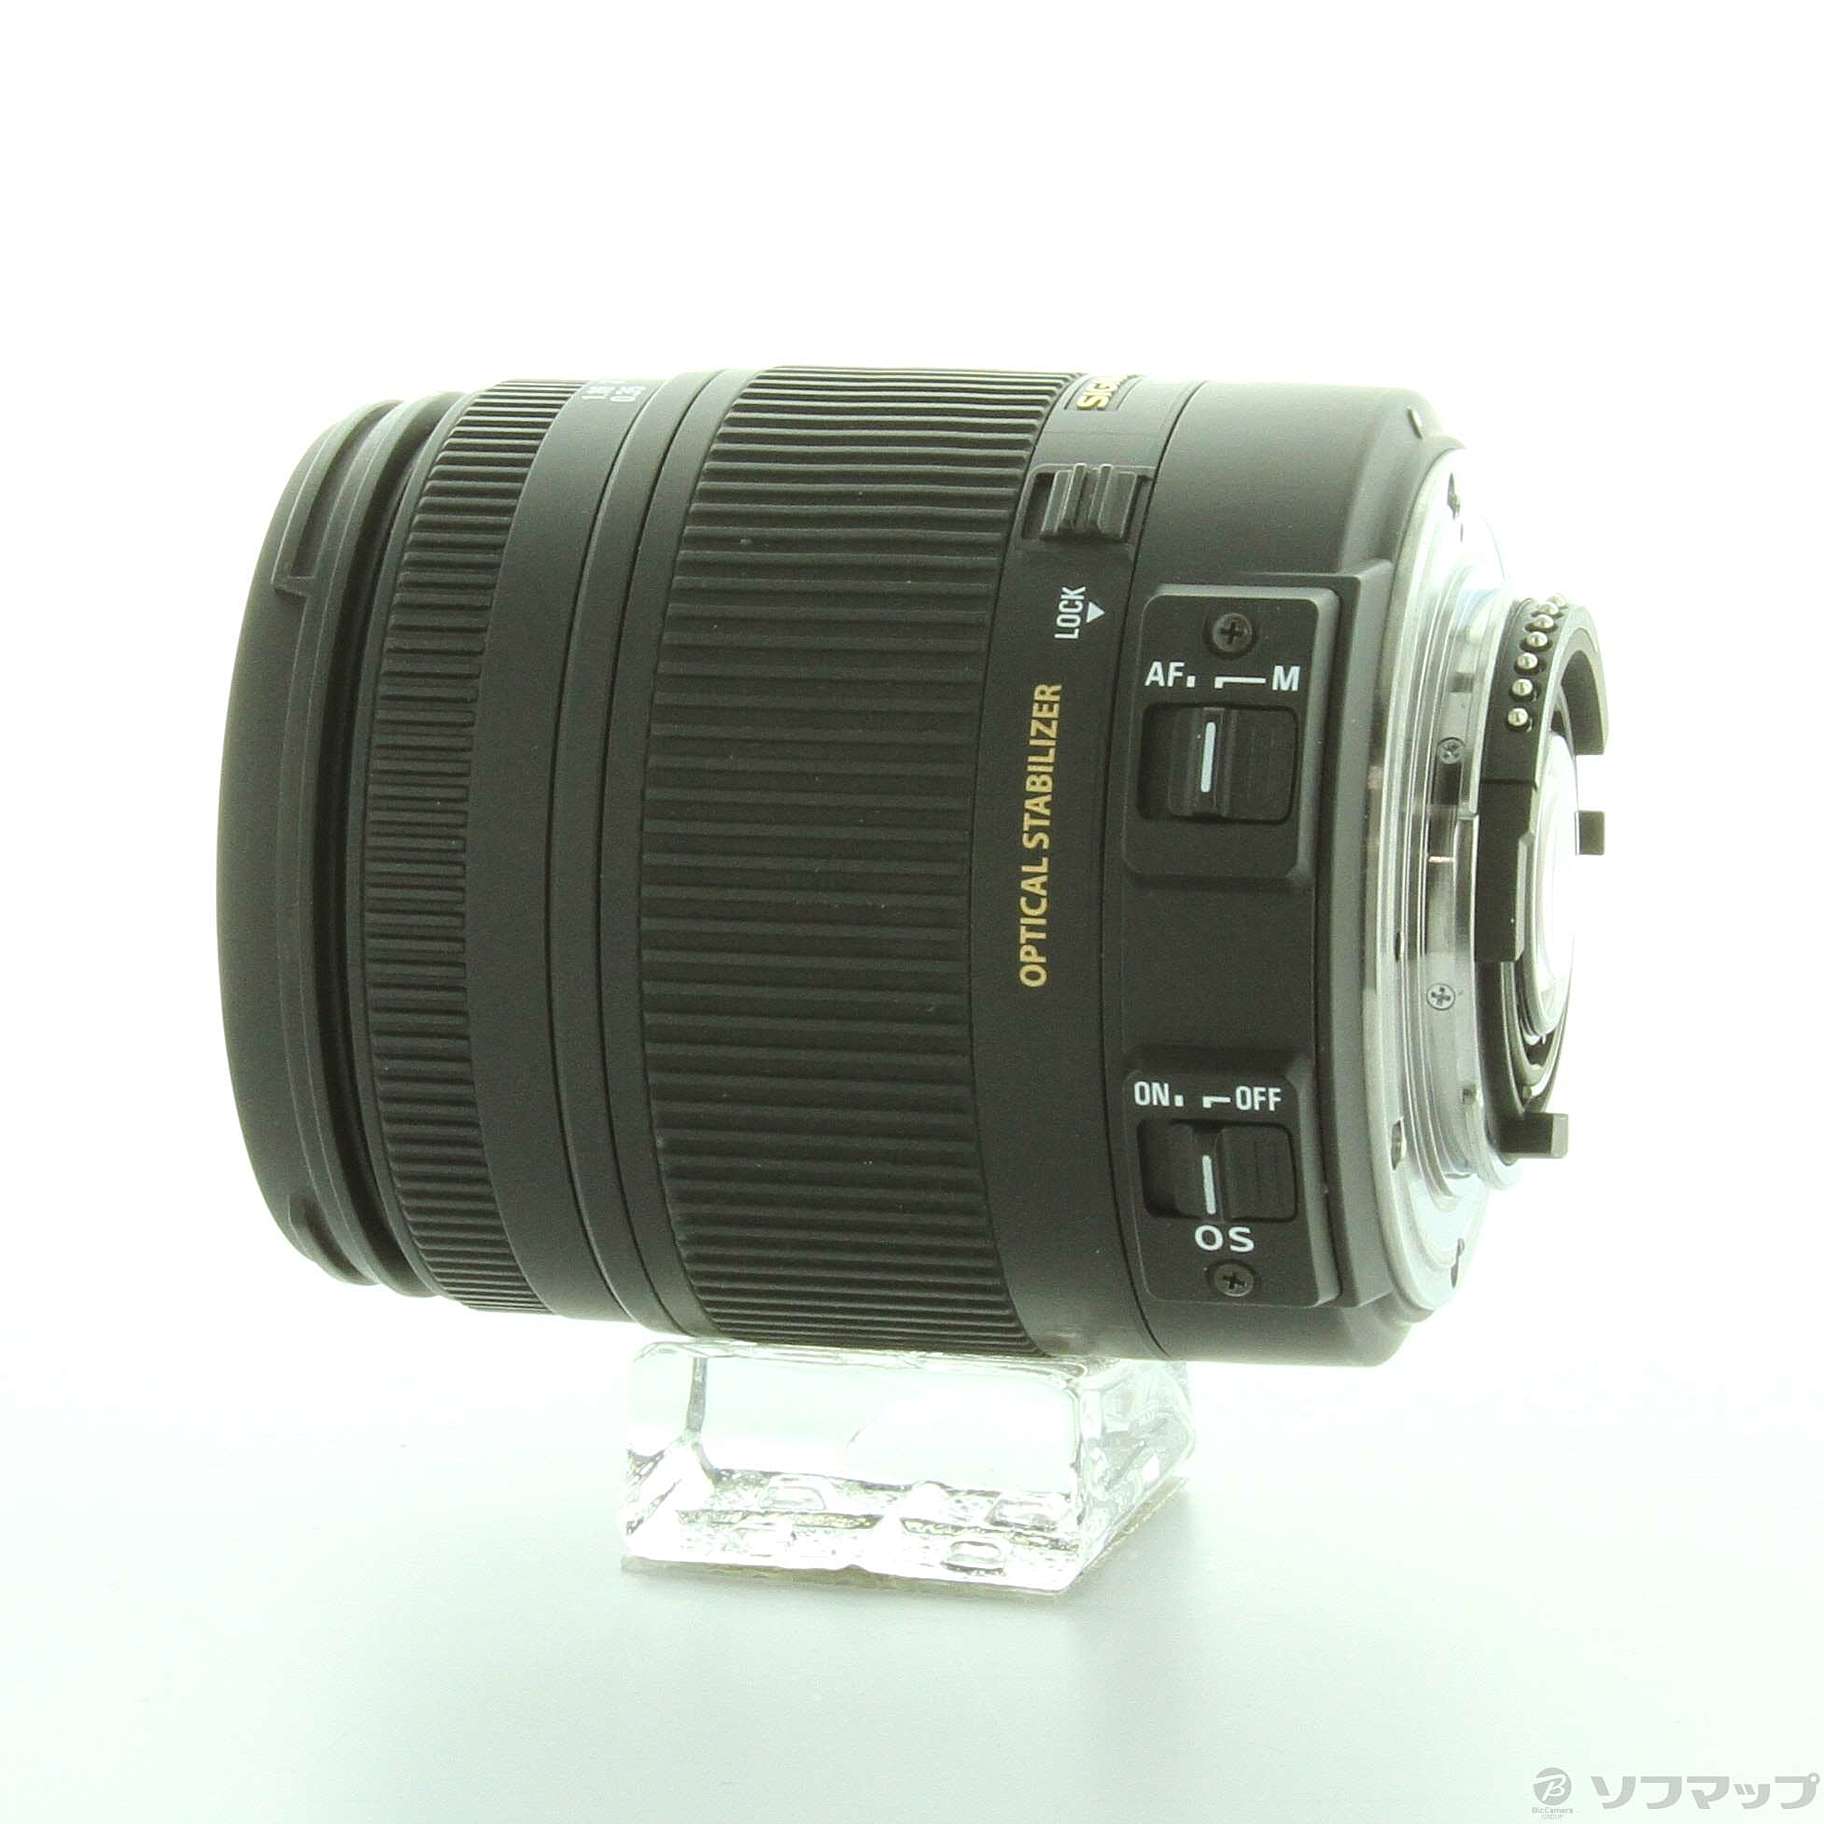 中古】SIGMA 18-250mm F3.5-6.3 DC MACRO OS HSM (Nikon用